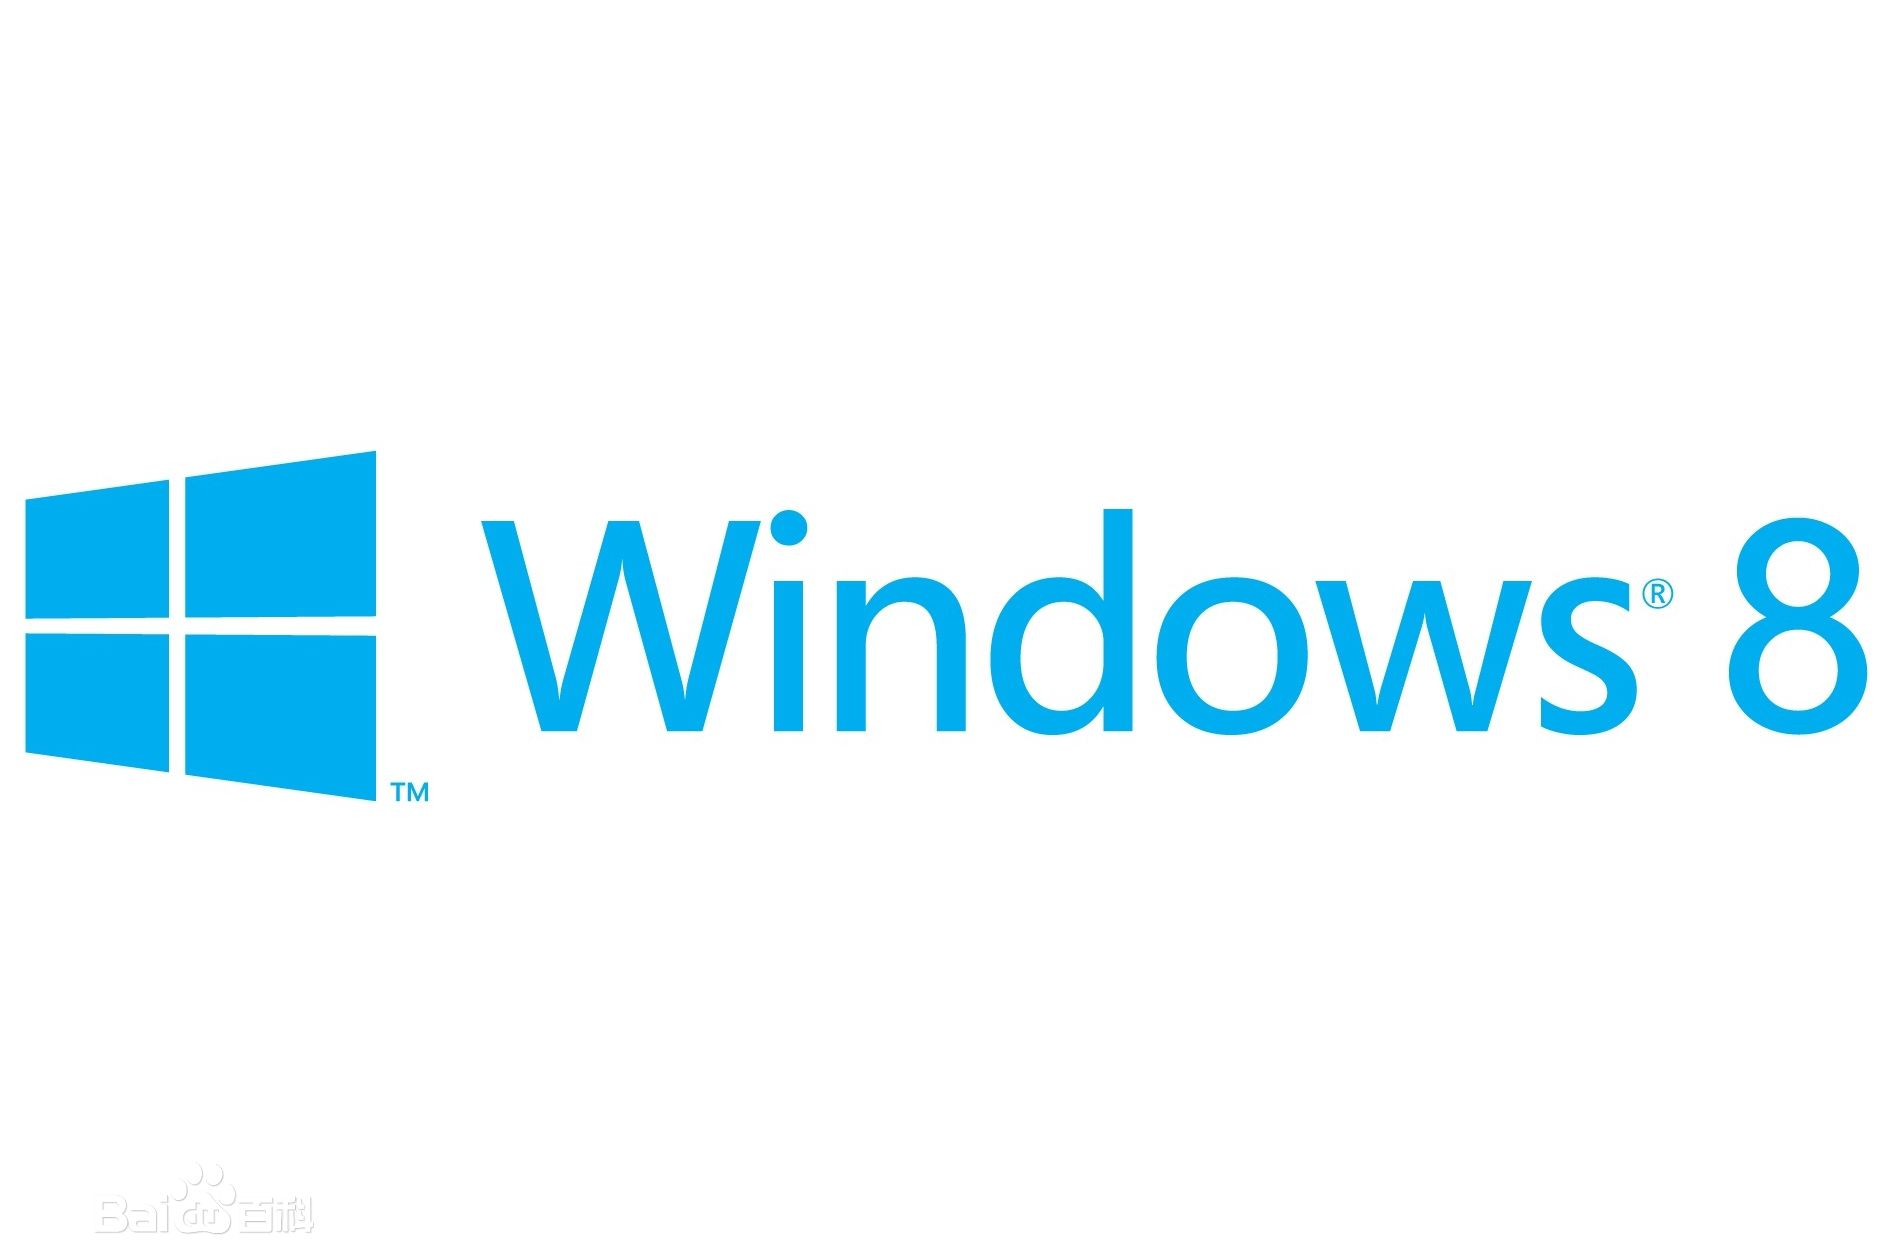 微软 Windows 8、东莞微软、正版 Windows 8东莞代理、广东思瑞科技图片